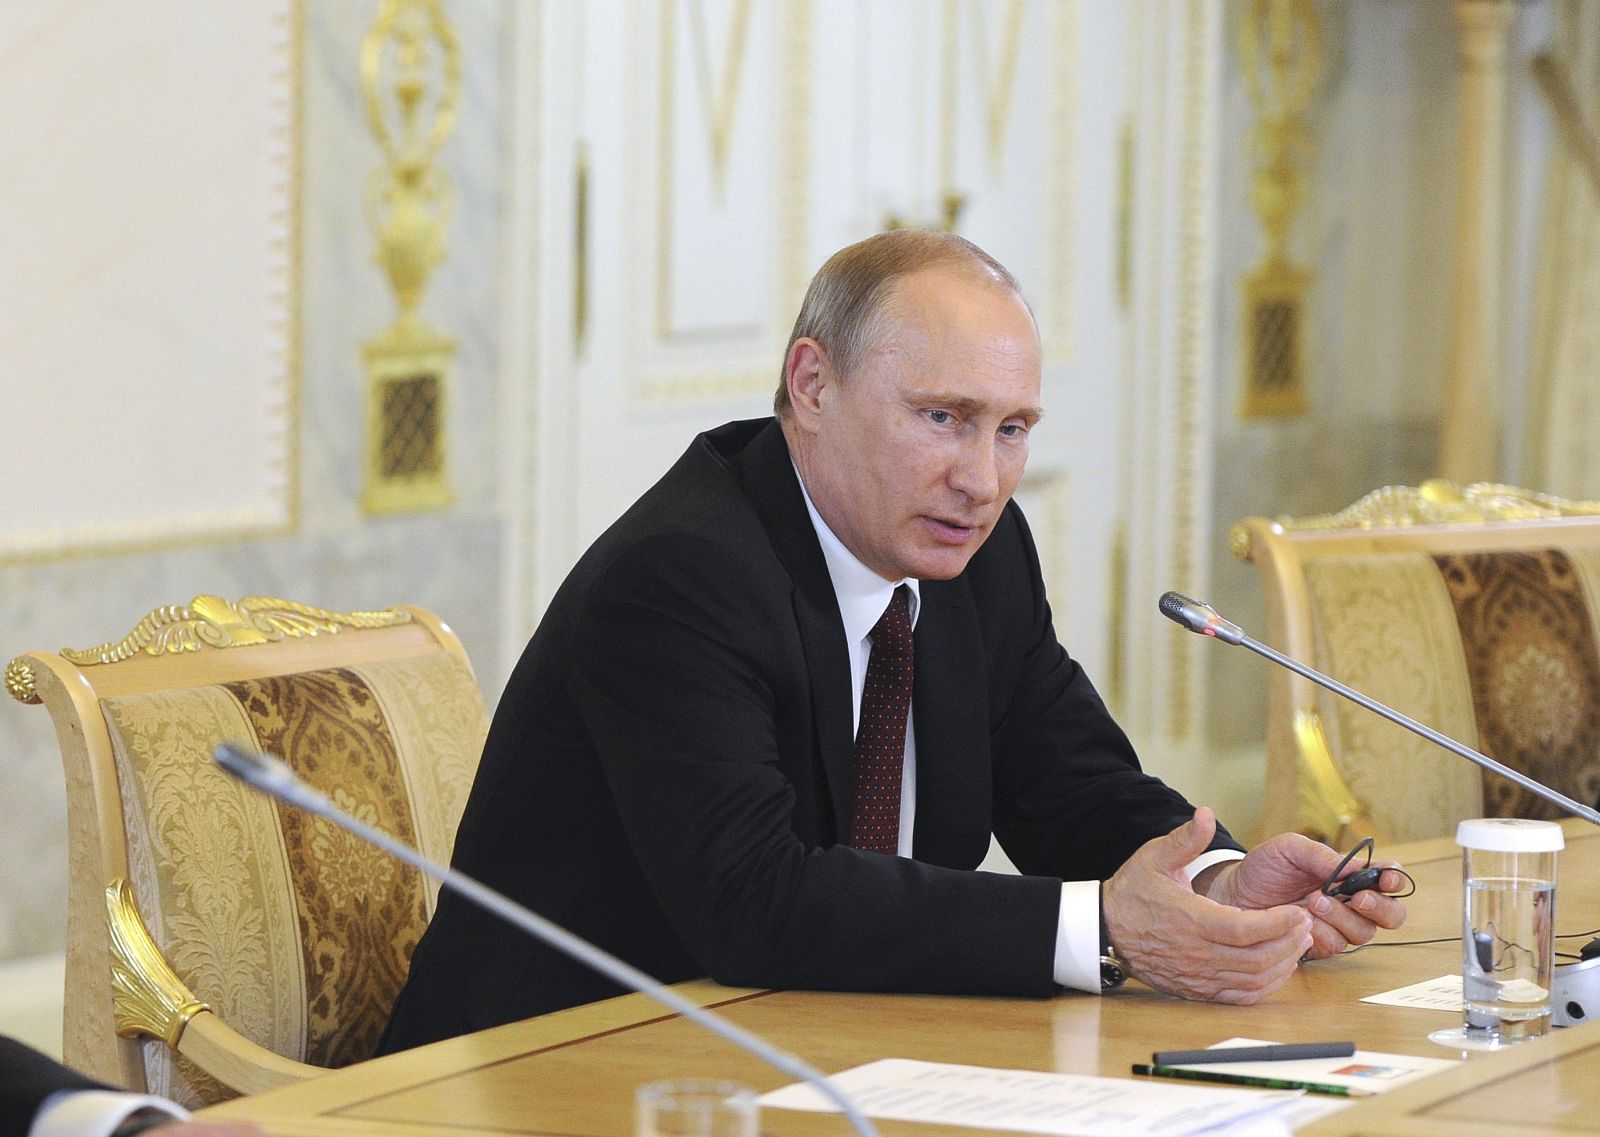 El presidente de Rusia, Vladímir Putin se ha reunido con los presidentes de doce agencias internacionales de prensa, entre ellas Efe.